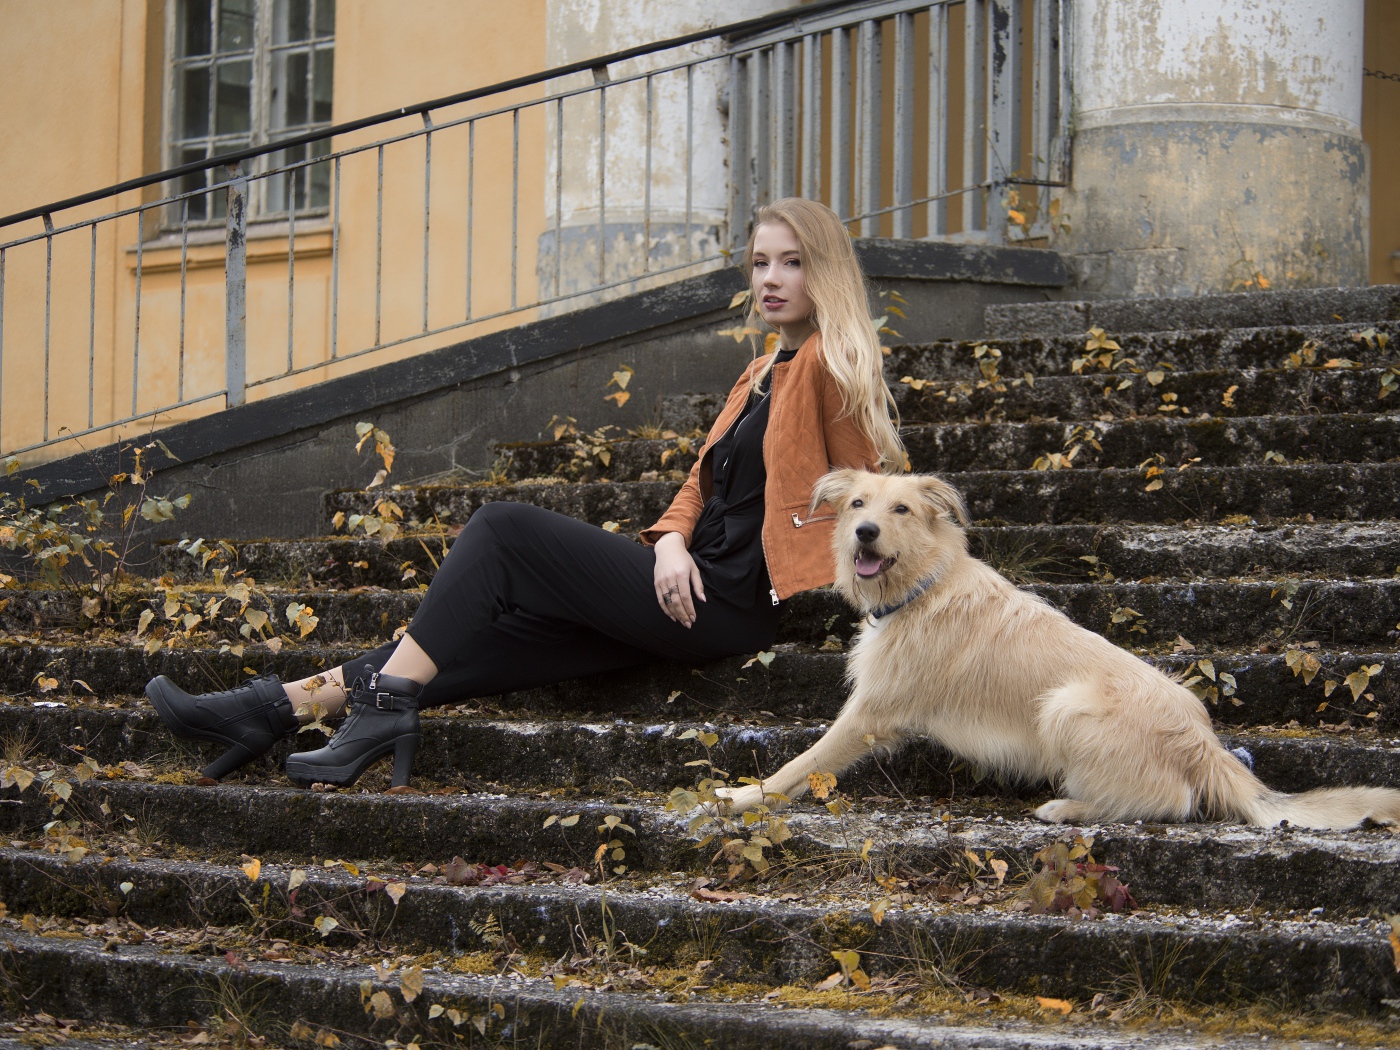 Молодая девушка сидит с собакой на старых ступеньках